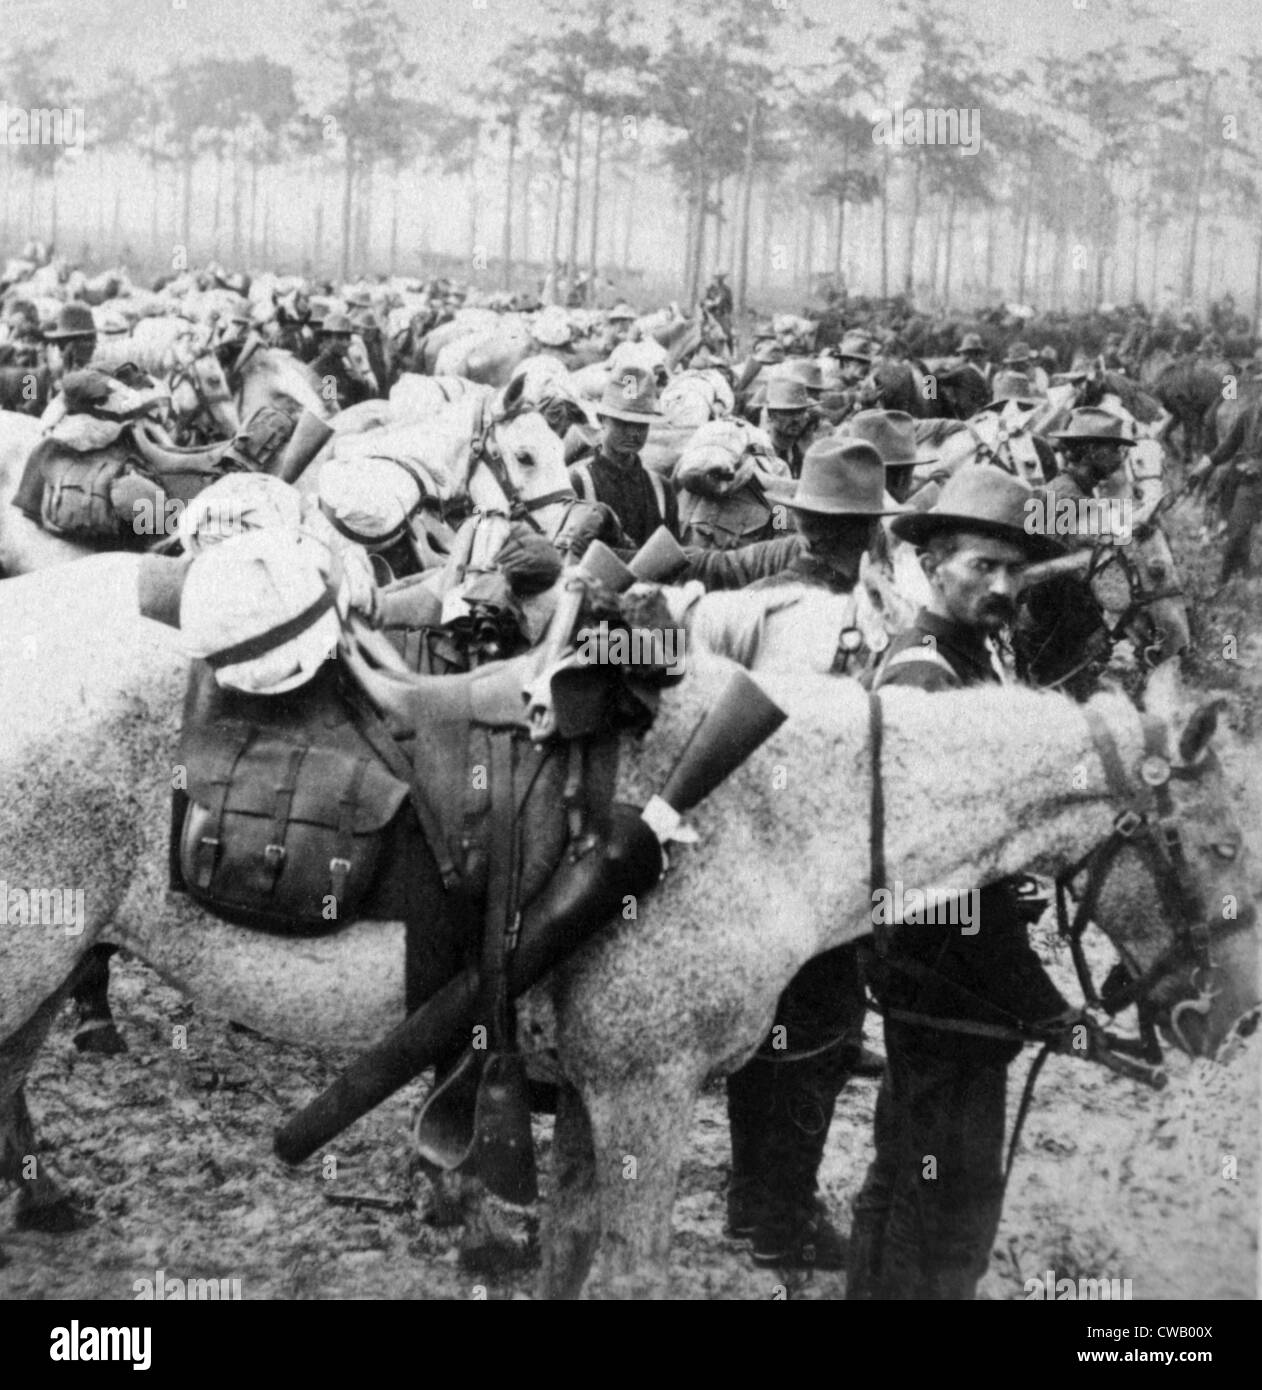 La guerre hispano-américaine (avril-août 1898), la troupe les Rough Riders de H à Cuba, 1898. Albumen photographie stéréo. Banque D'Images